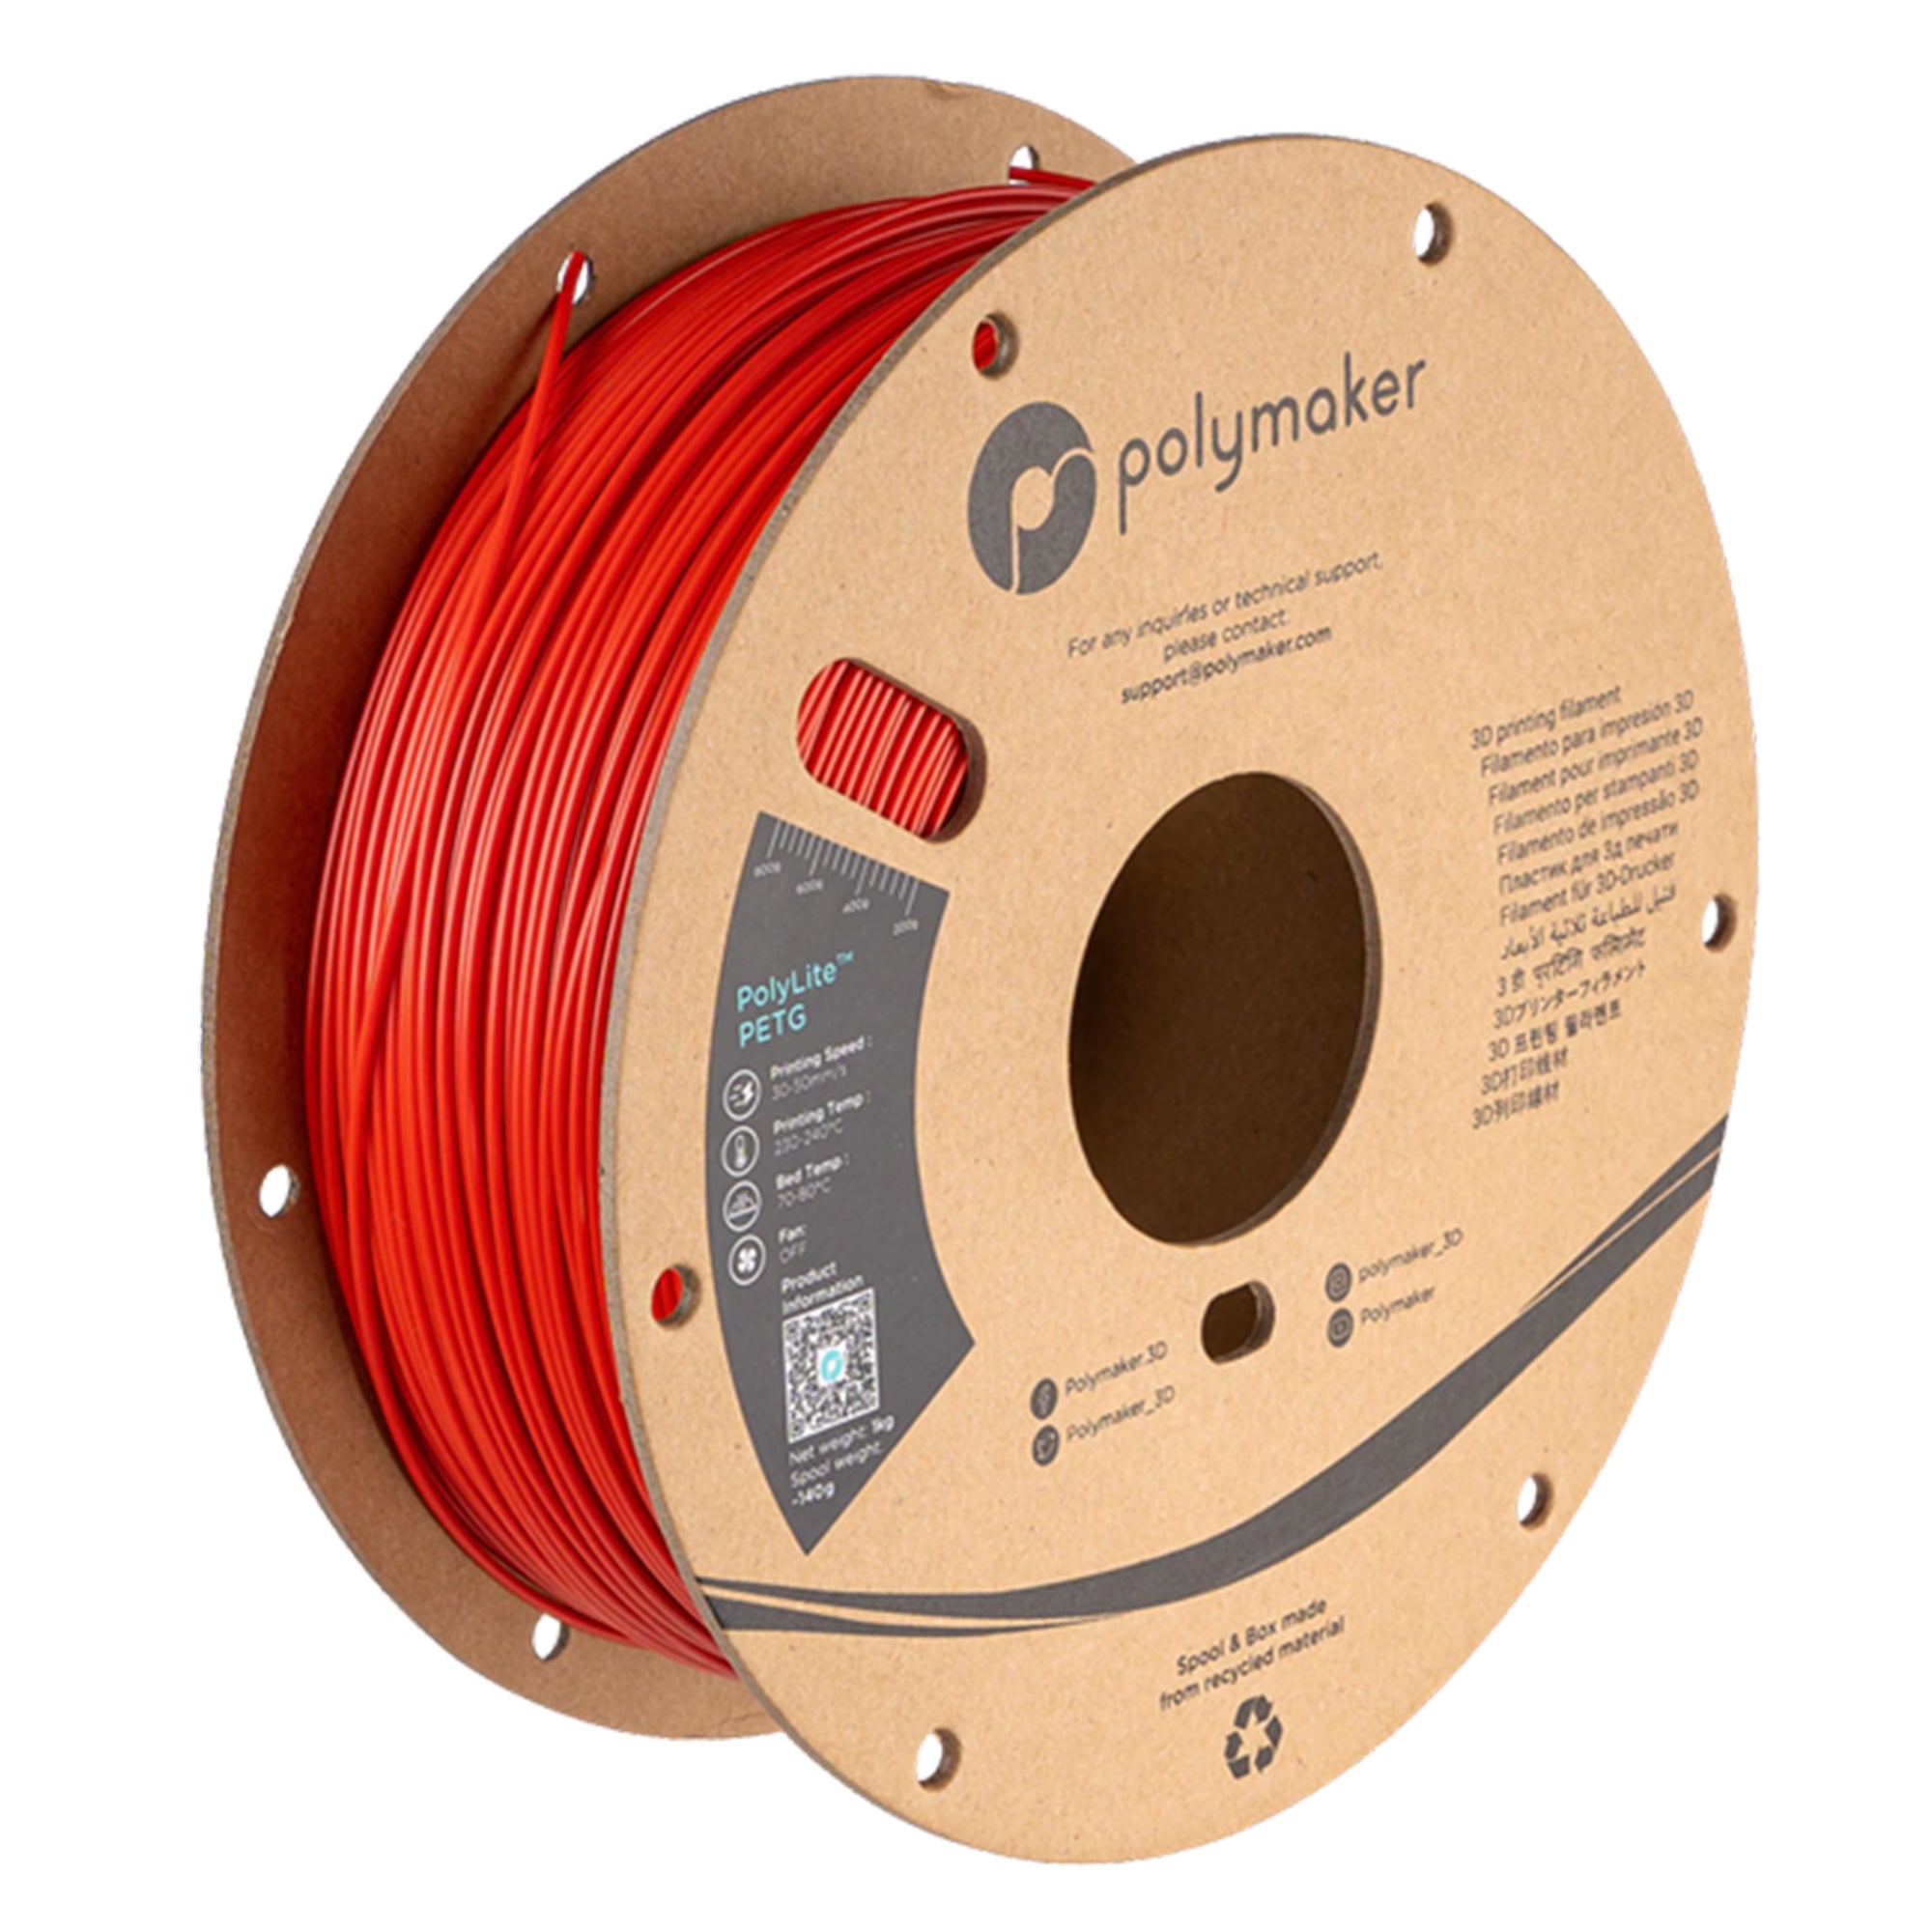 Polymaker PolyLite PETG 1.75mm Filament 1kg